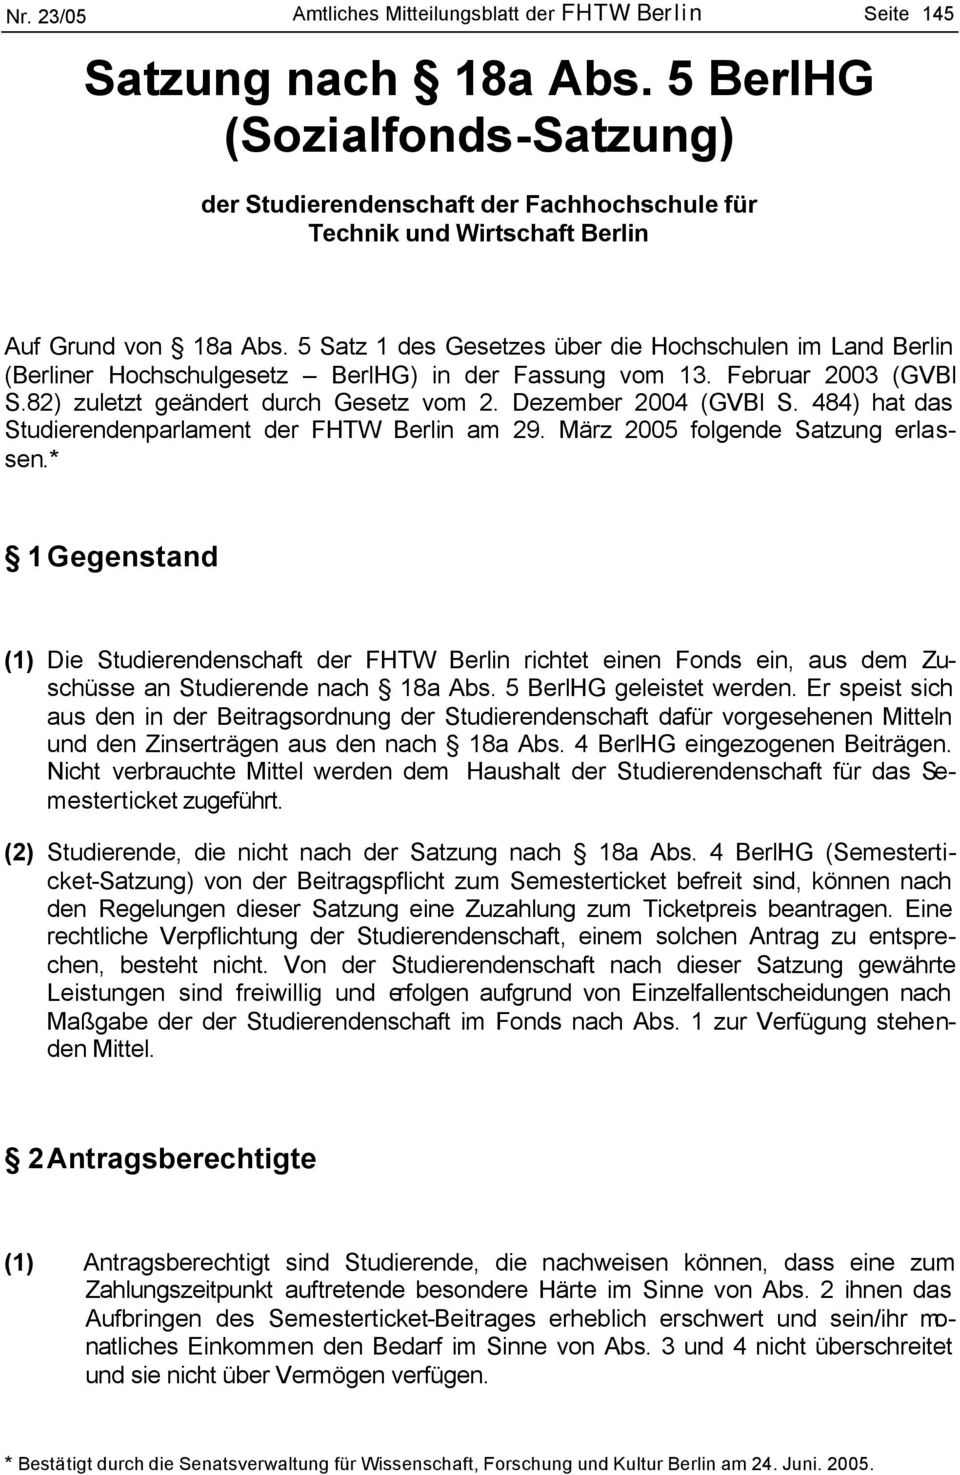 5 Satz 1 des Gesetzes über die Hochschulen im Land Berlin (Berliner Hochschulgesetz BerlHG) in der Fassung vom 13. Februar 2003 (GVBl S.82) zuletzt geändert durch Gesetz vom 2. Dezember 2004 (GVBl S.